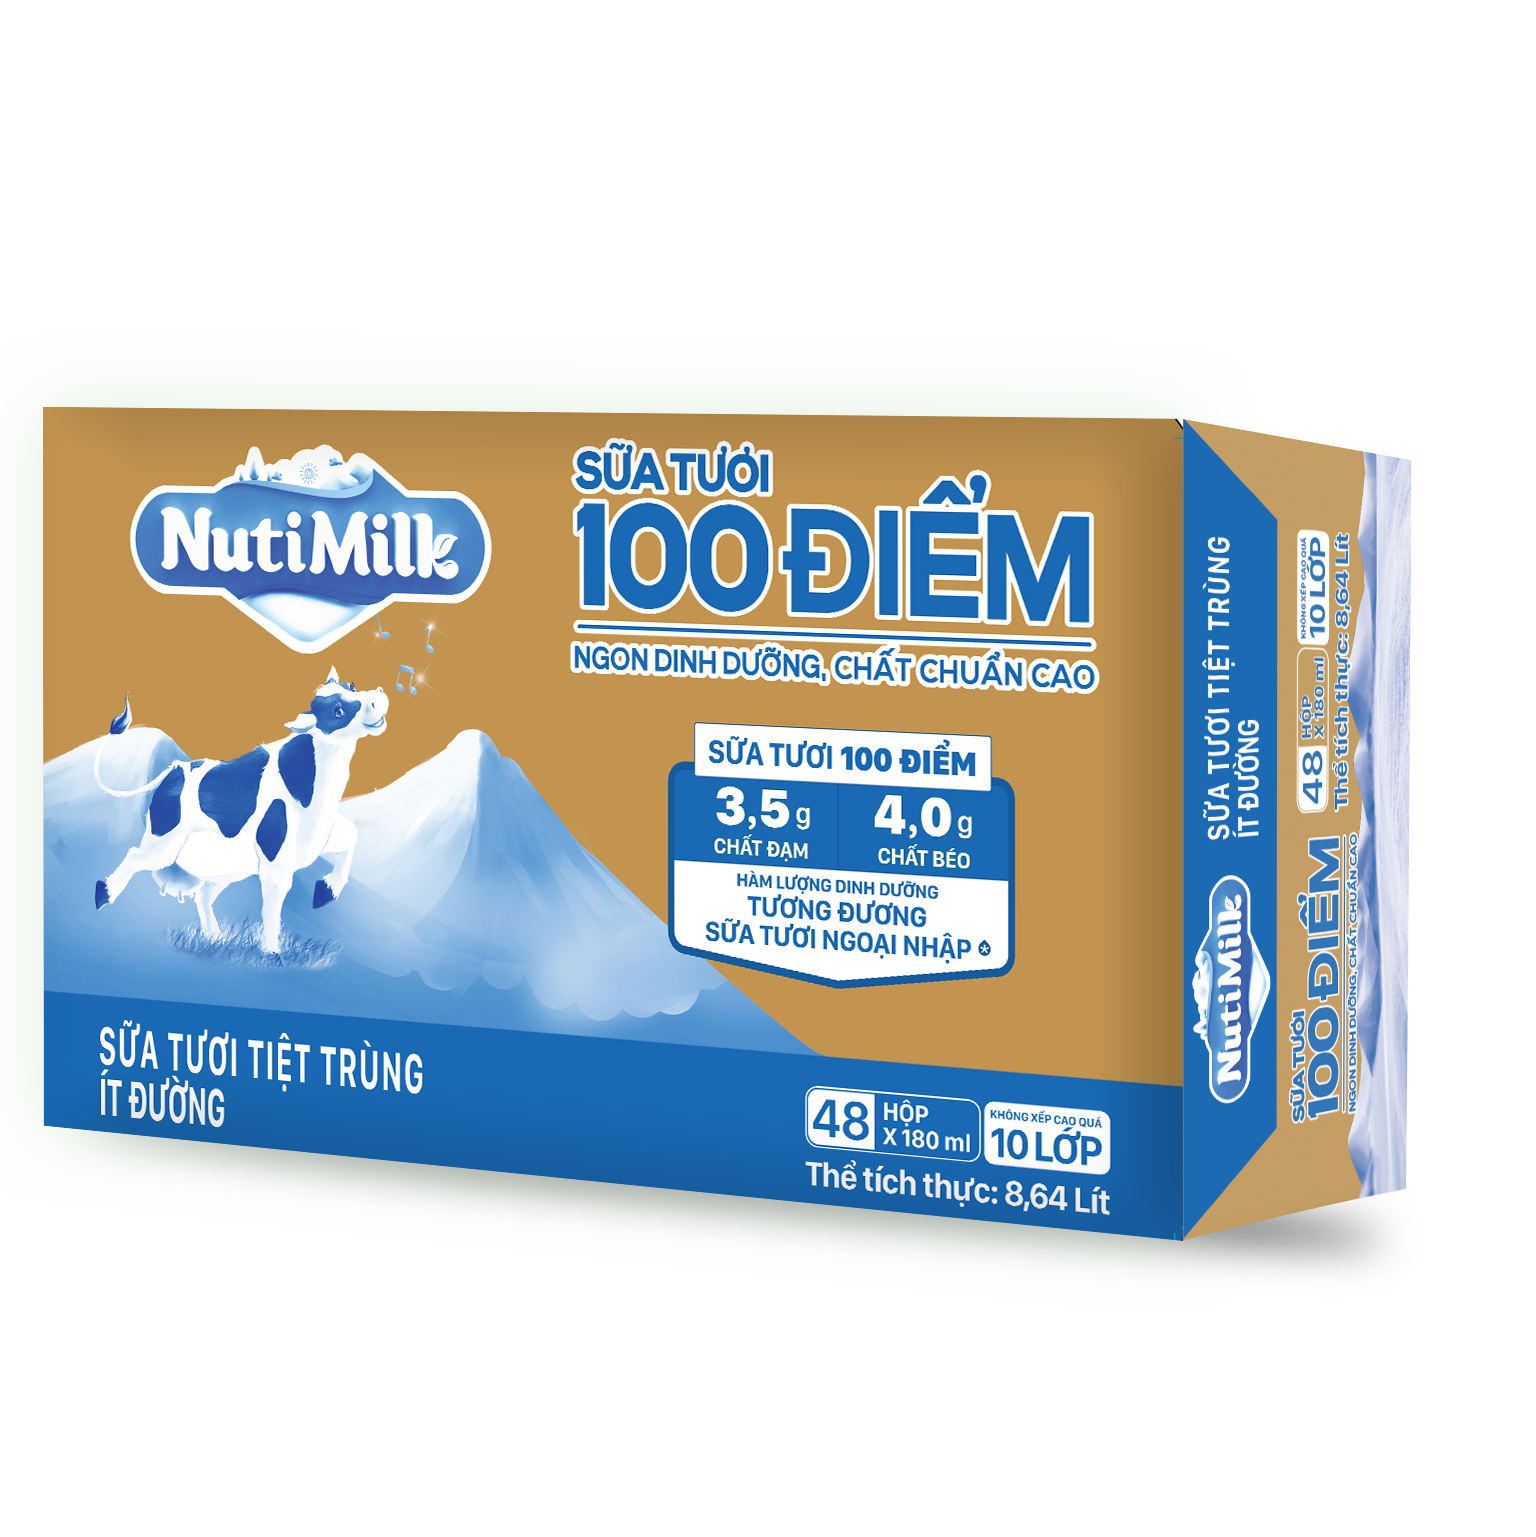 Thùng 48 Hộp NutiMilk Sữa tươi 100 điểm